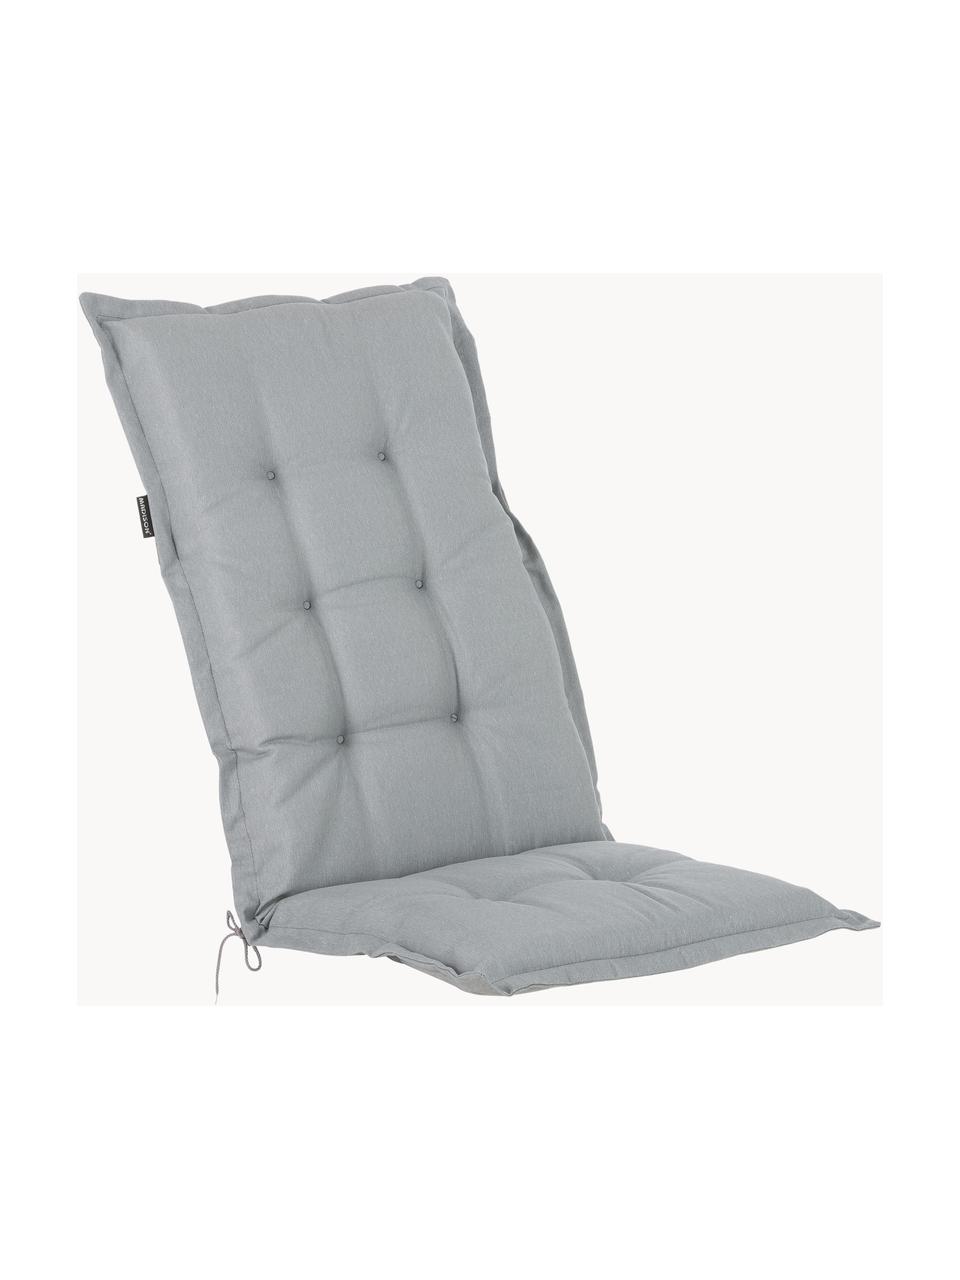 Einfarbige Hochlehner-Stuhlauflage Panama, Bezug: 50% Baumwolle, 50% Polyes, Hellgrau, B 42 x L 120 cm